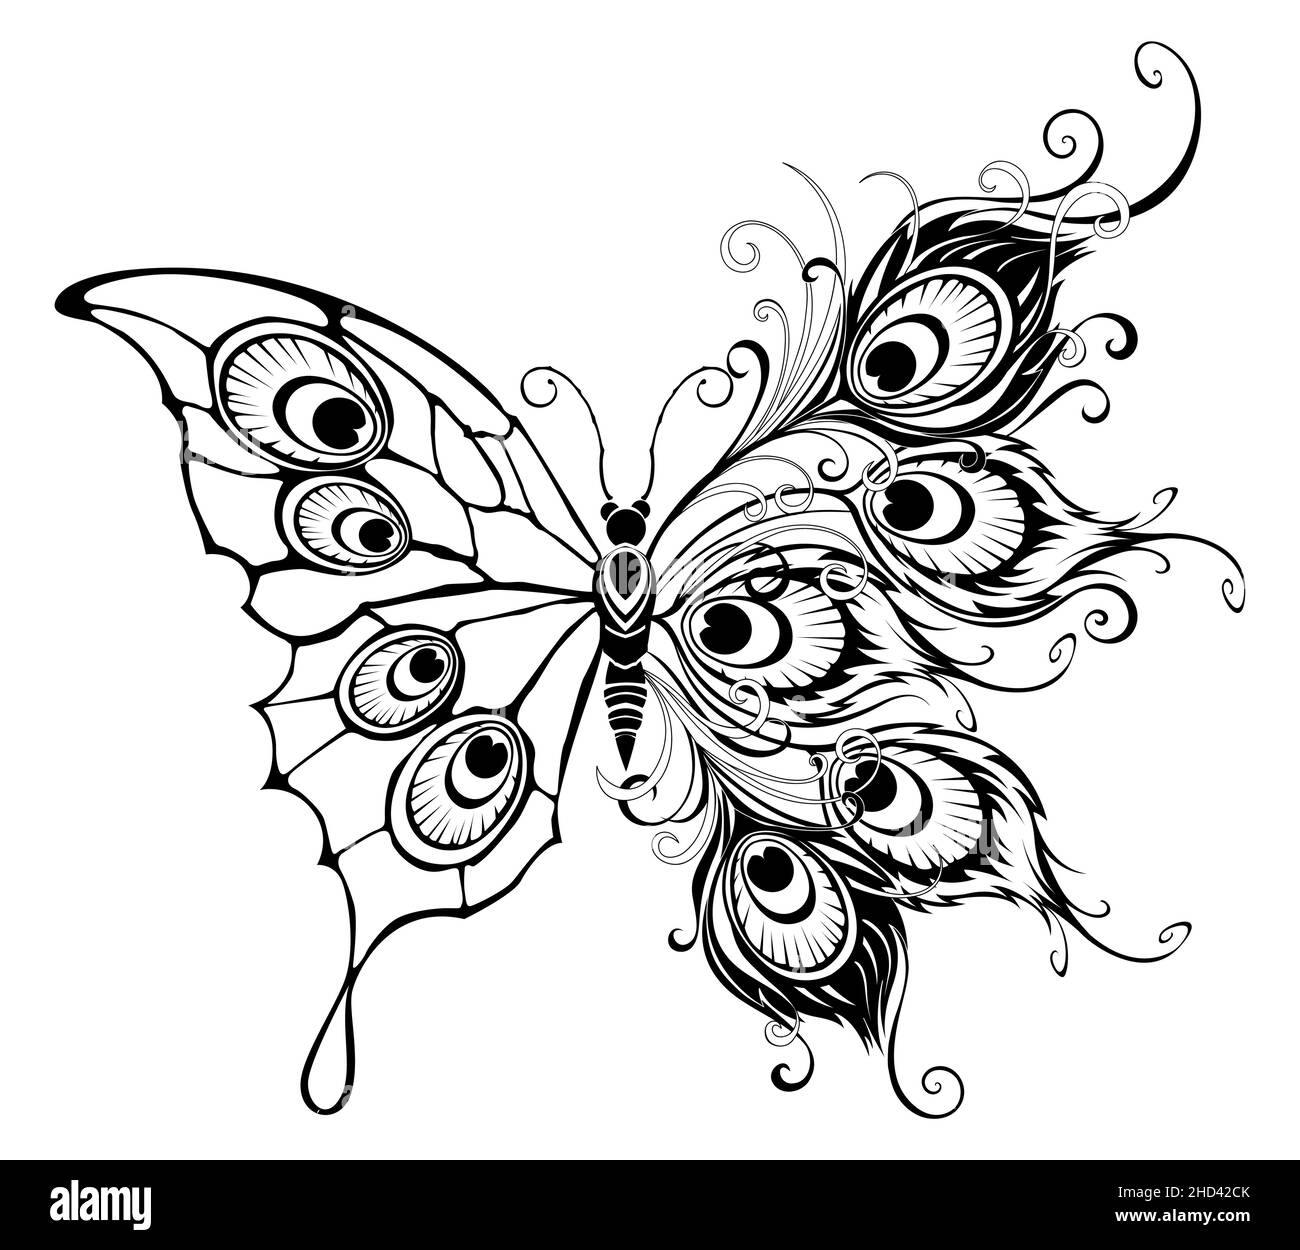 Künstlerisch gezeichnet, konturiert, isoliert, ungewöhnlicher Pfauenschmetterling, mit Flügeln verziert mit Pfauenfedern.Schmetterling Tattoo-Stil. Stock Vektor